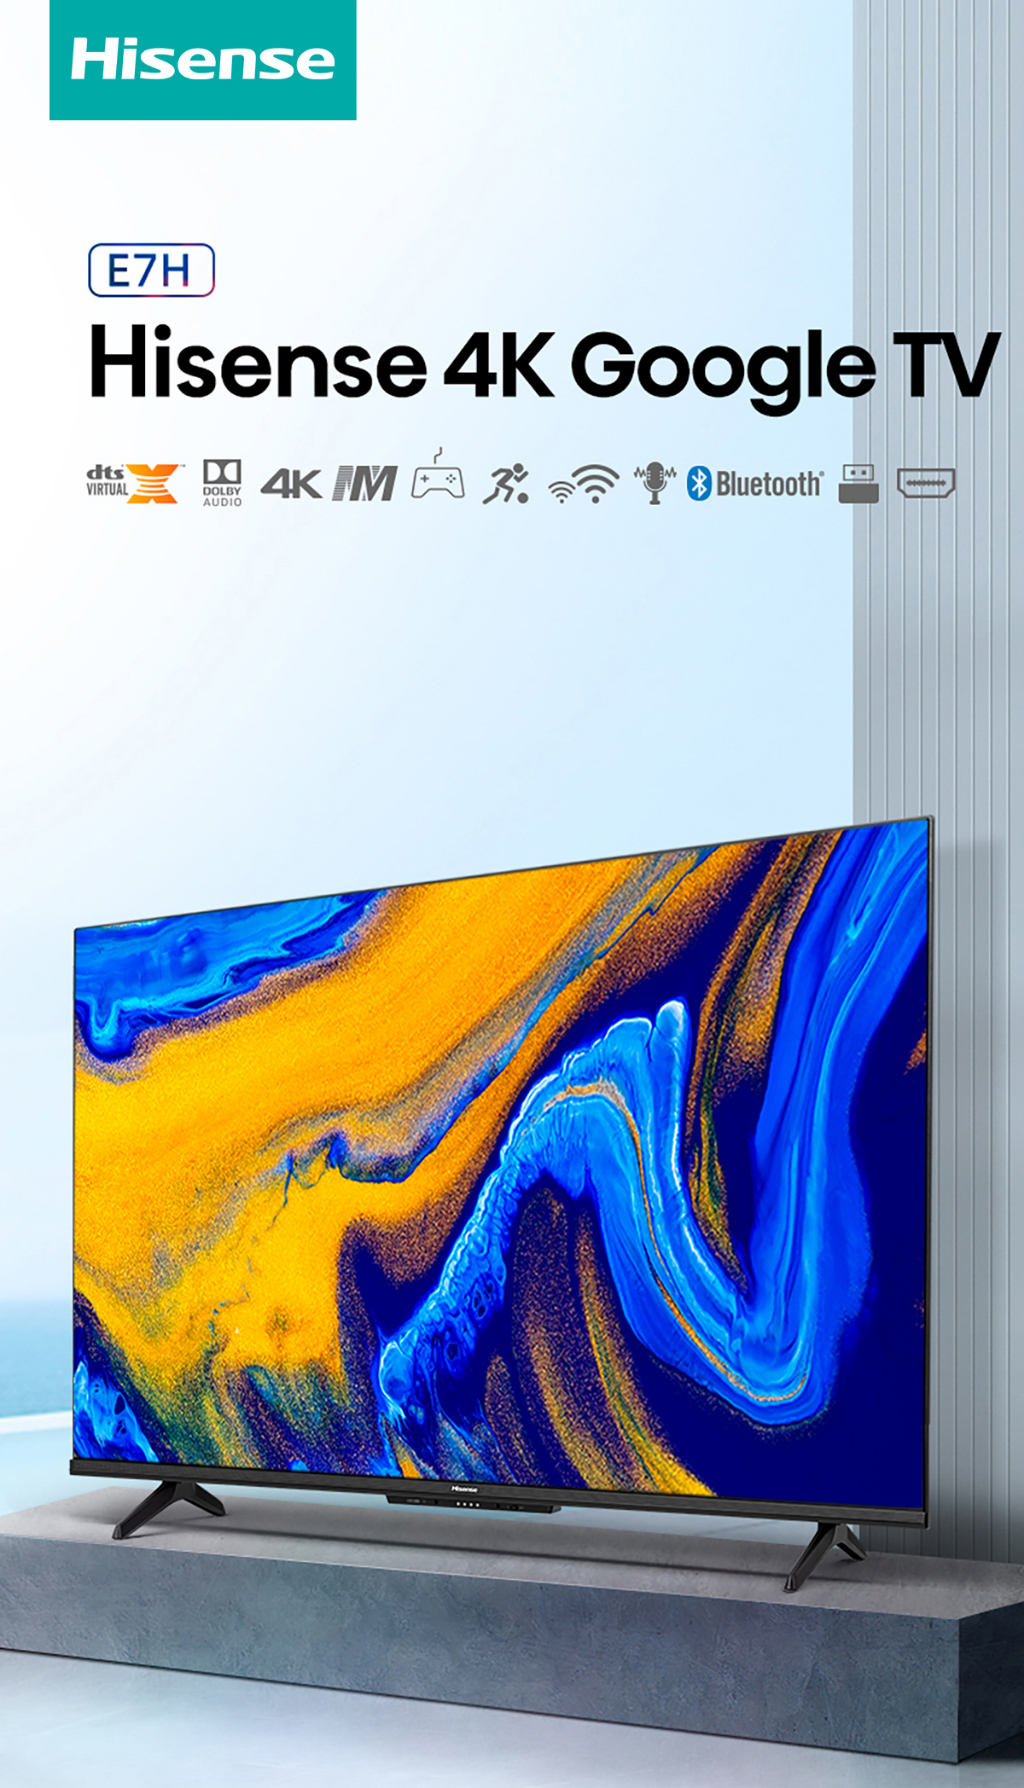 ภาพประกอบของ Hisense TV 50E7H ทีวี 50 นิ้ว 4K UHD Google TV/DVB-T2 / USB2.0 / HDMI /AV / ปี 2022 Hand-free voice control